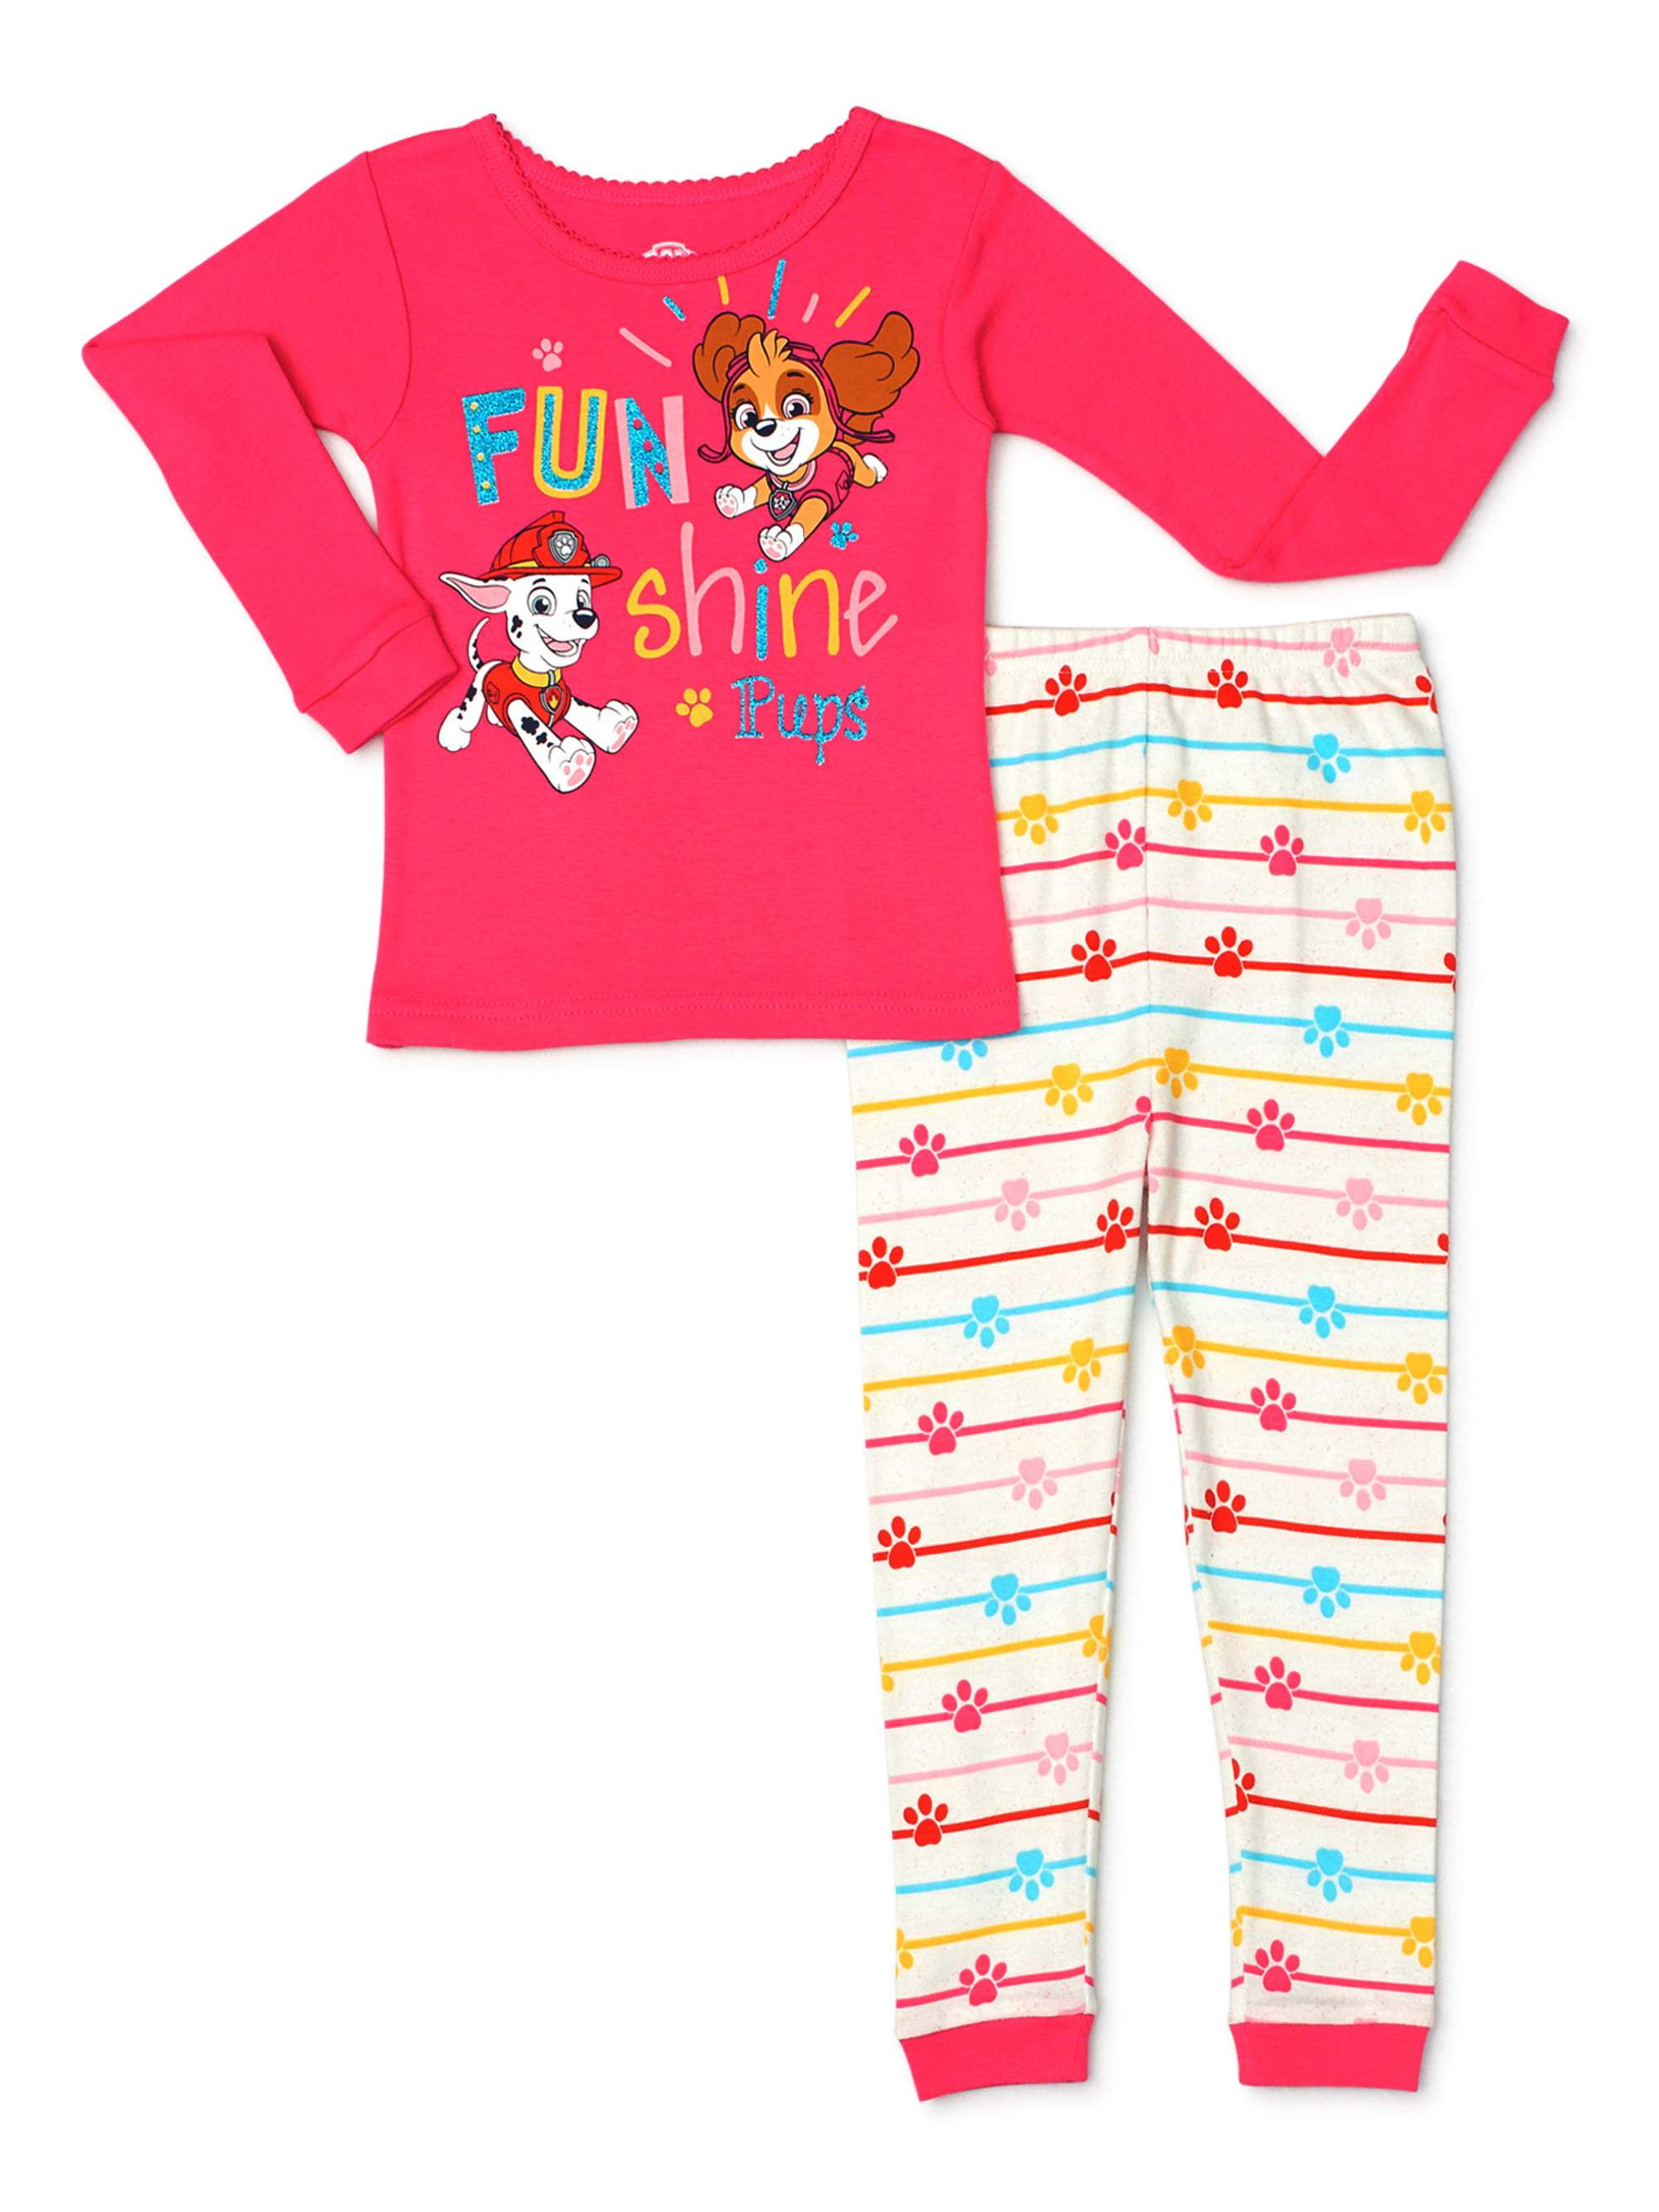 Paw Patrol Toddler Girls 3 Pc Pajama Set NWT Sleep Shirts Shorts  2T  3T or  4T